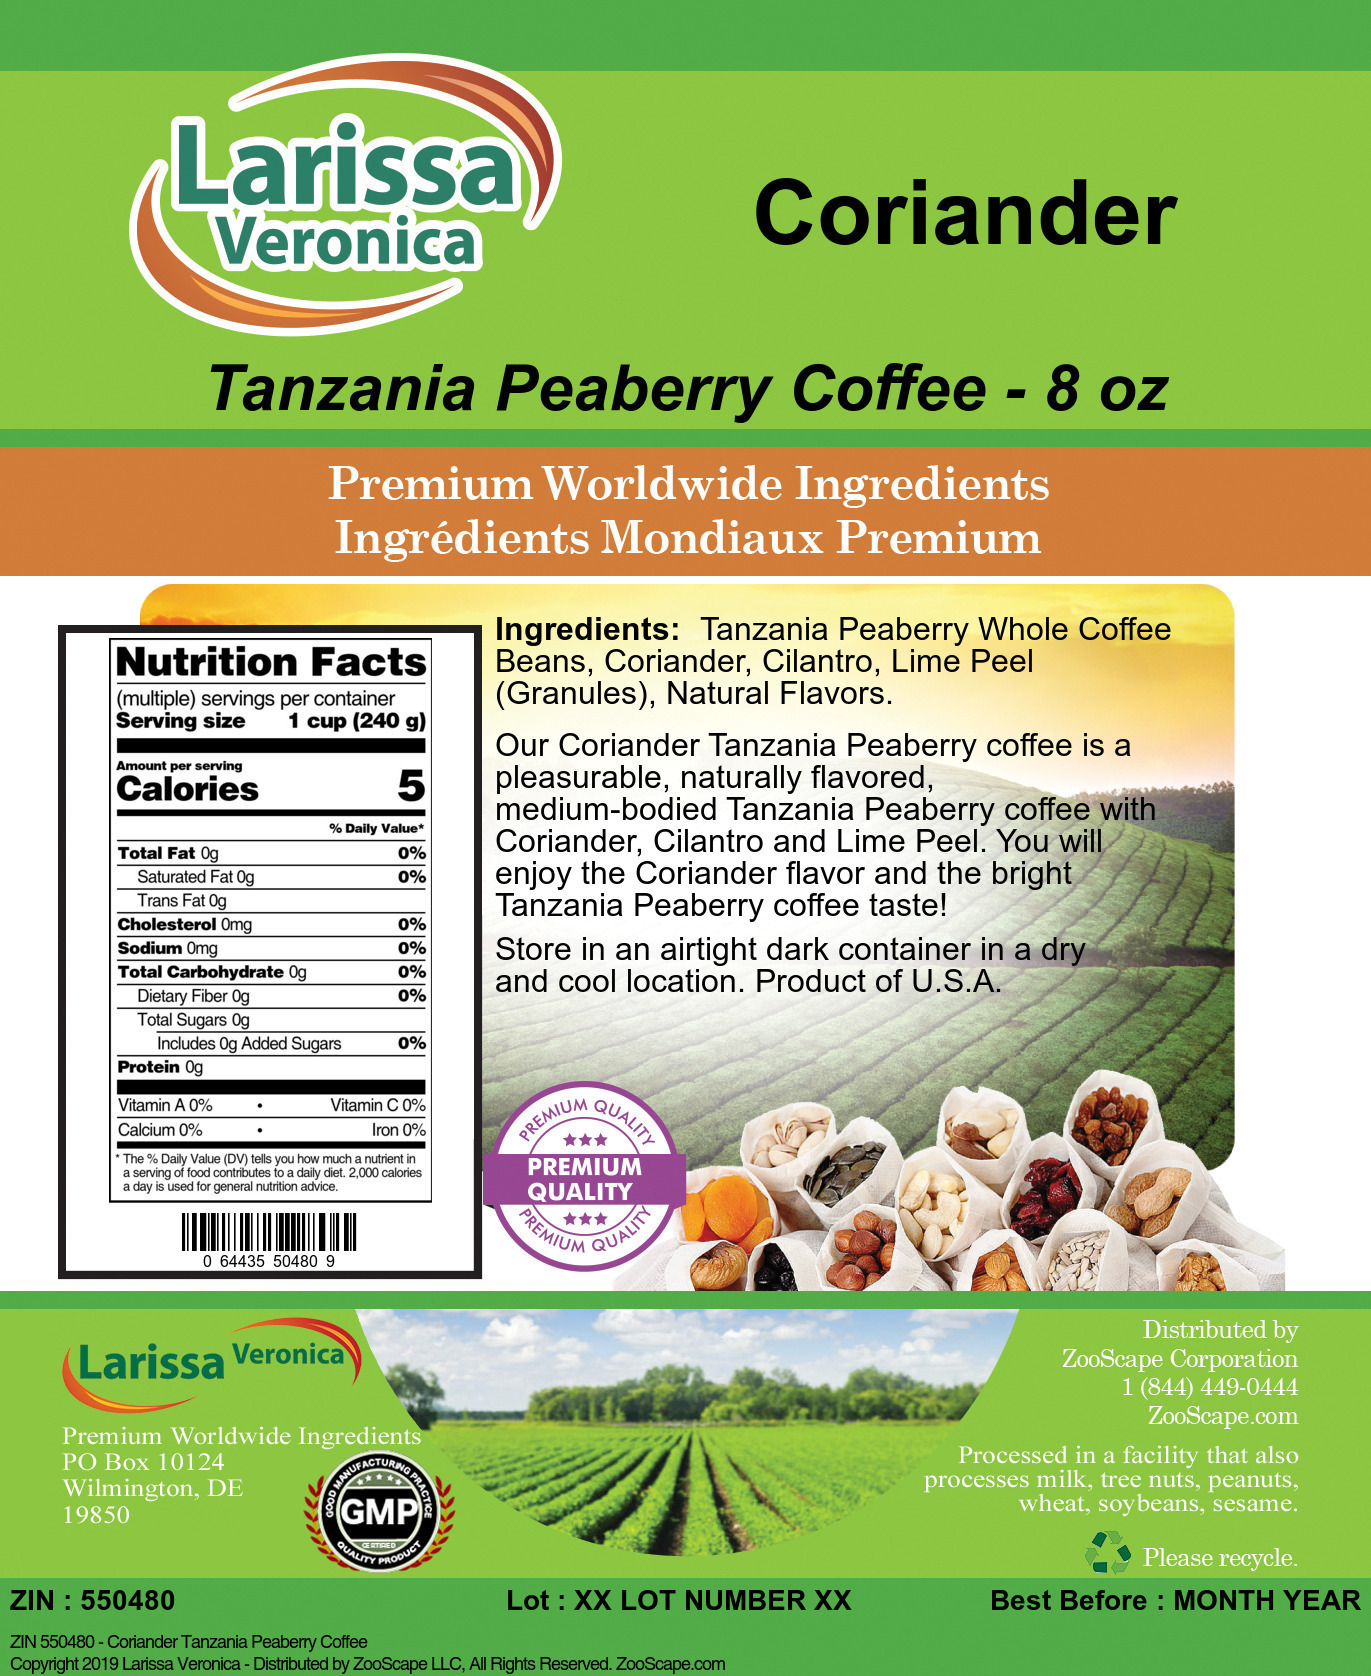 Coriander Tanzania Peaberry Coffee - Label